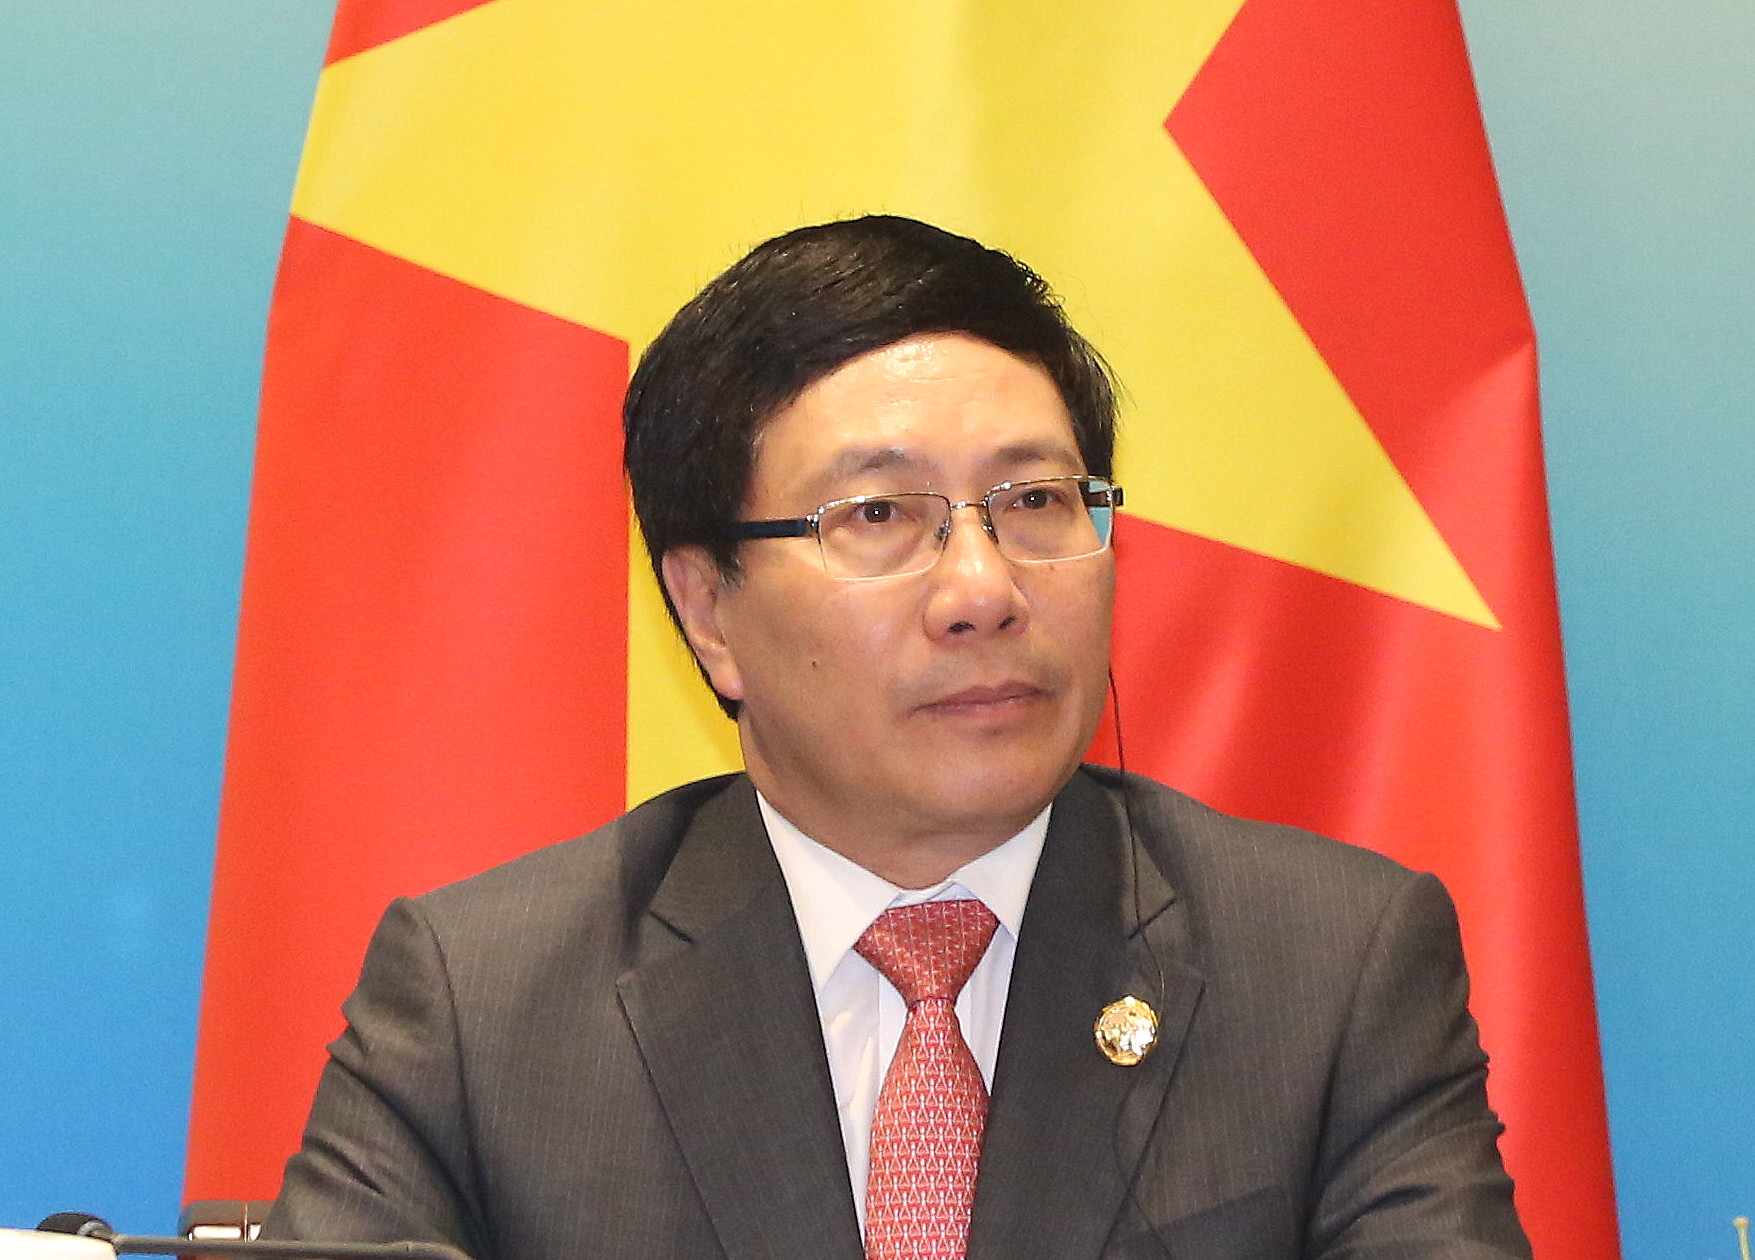 Phó Thủ tướng Phạm Bình Minh dẫn đầu đoàn đại biểu Việt Nam tham dự Hội nghị thượng đỉnh về an ninh hạt nhân lần thứ 4 tại Washington D.C., Hoa Kỳ, từ ngày 31/3-1/4.